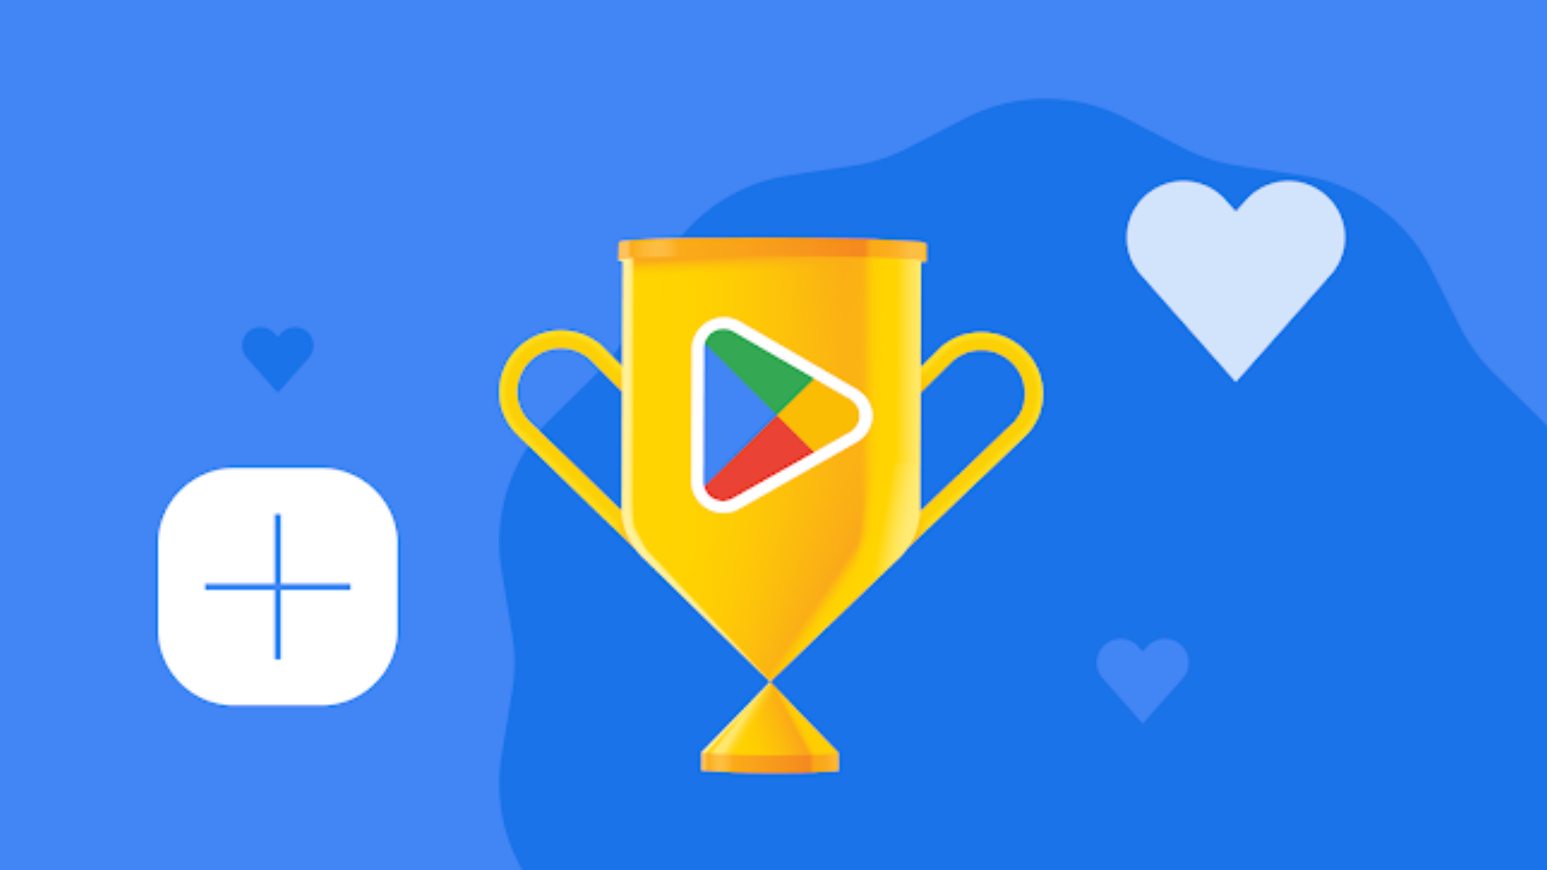 Os melhores apps e jogos na Play Store em 2022: o Google quer seu voto para escolher; como votar?